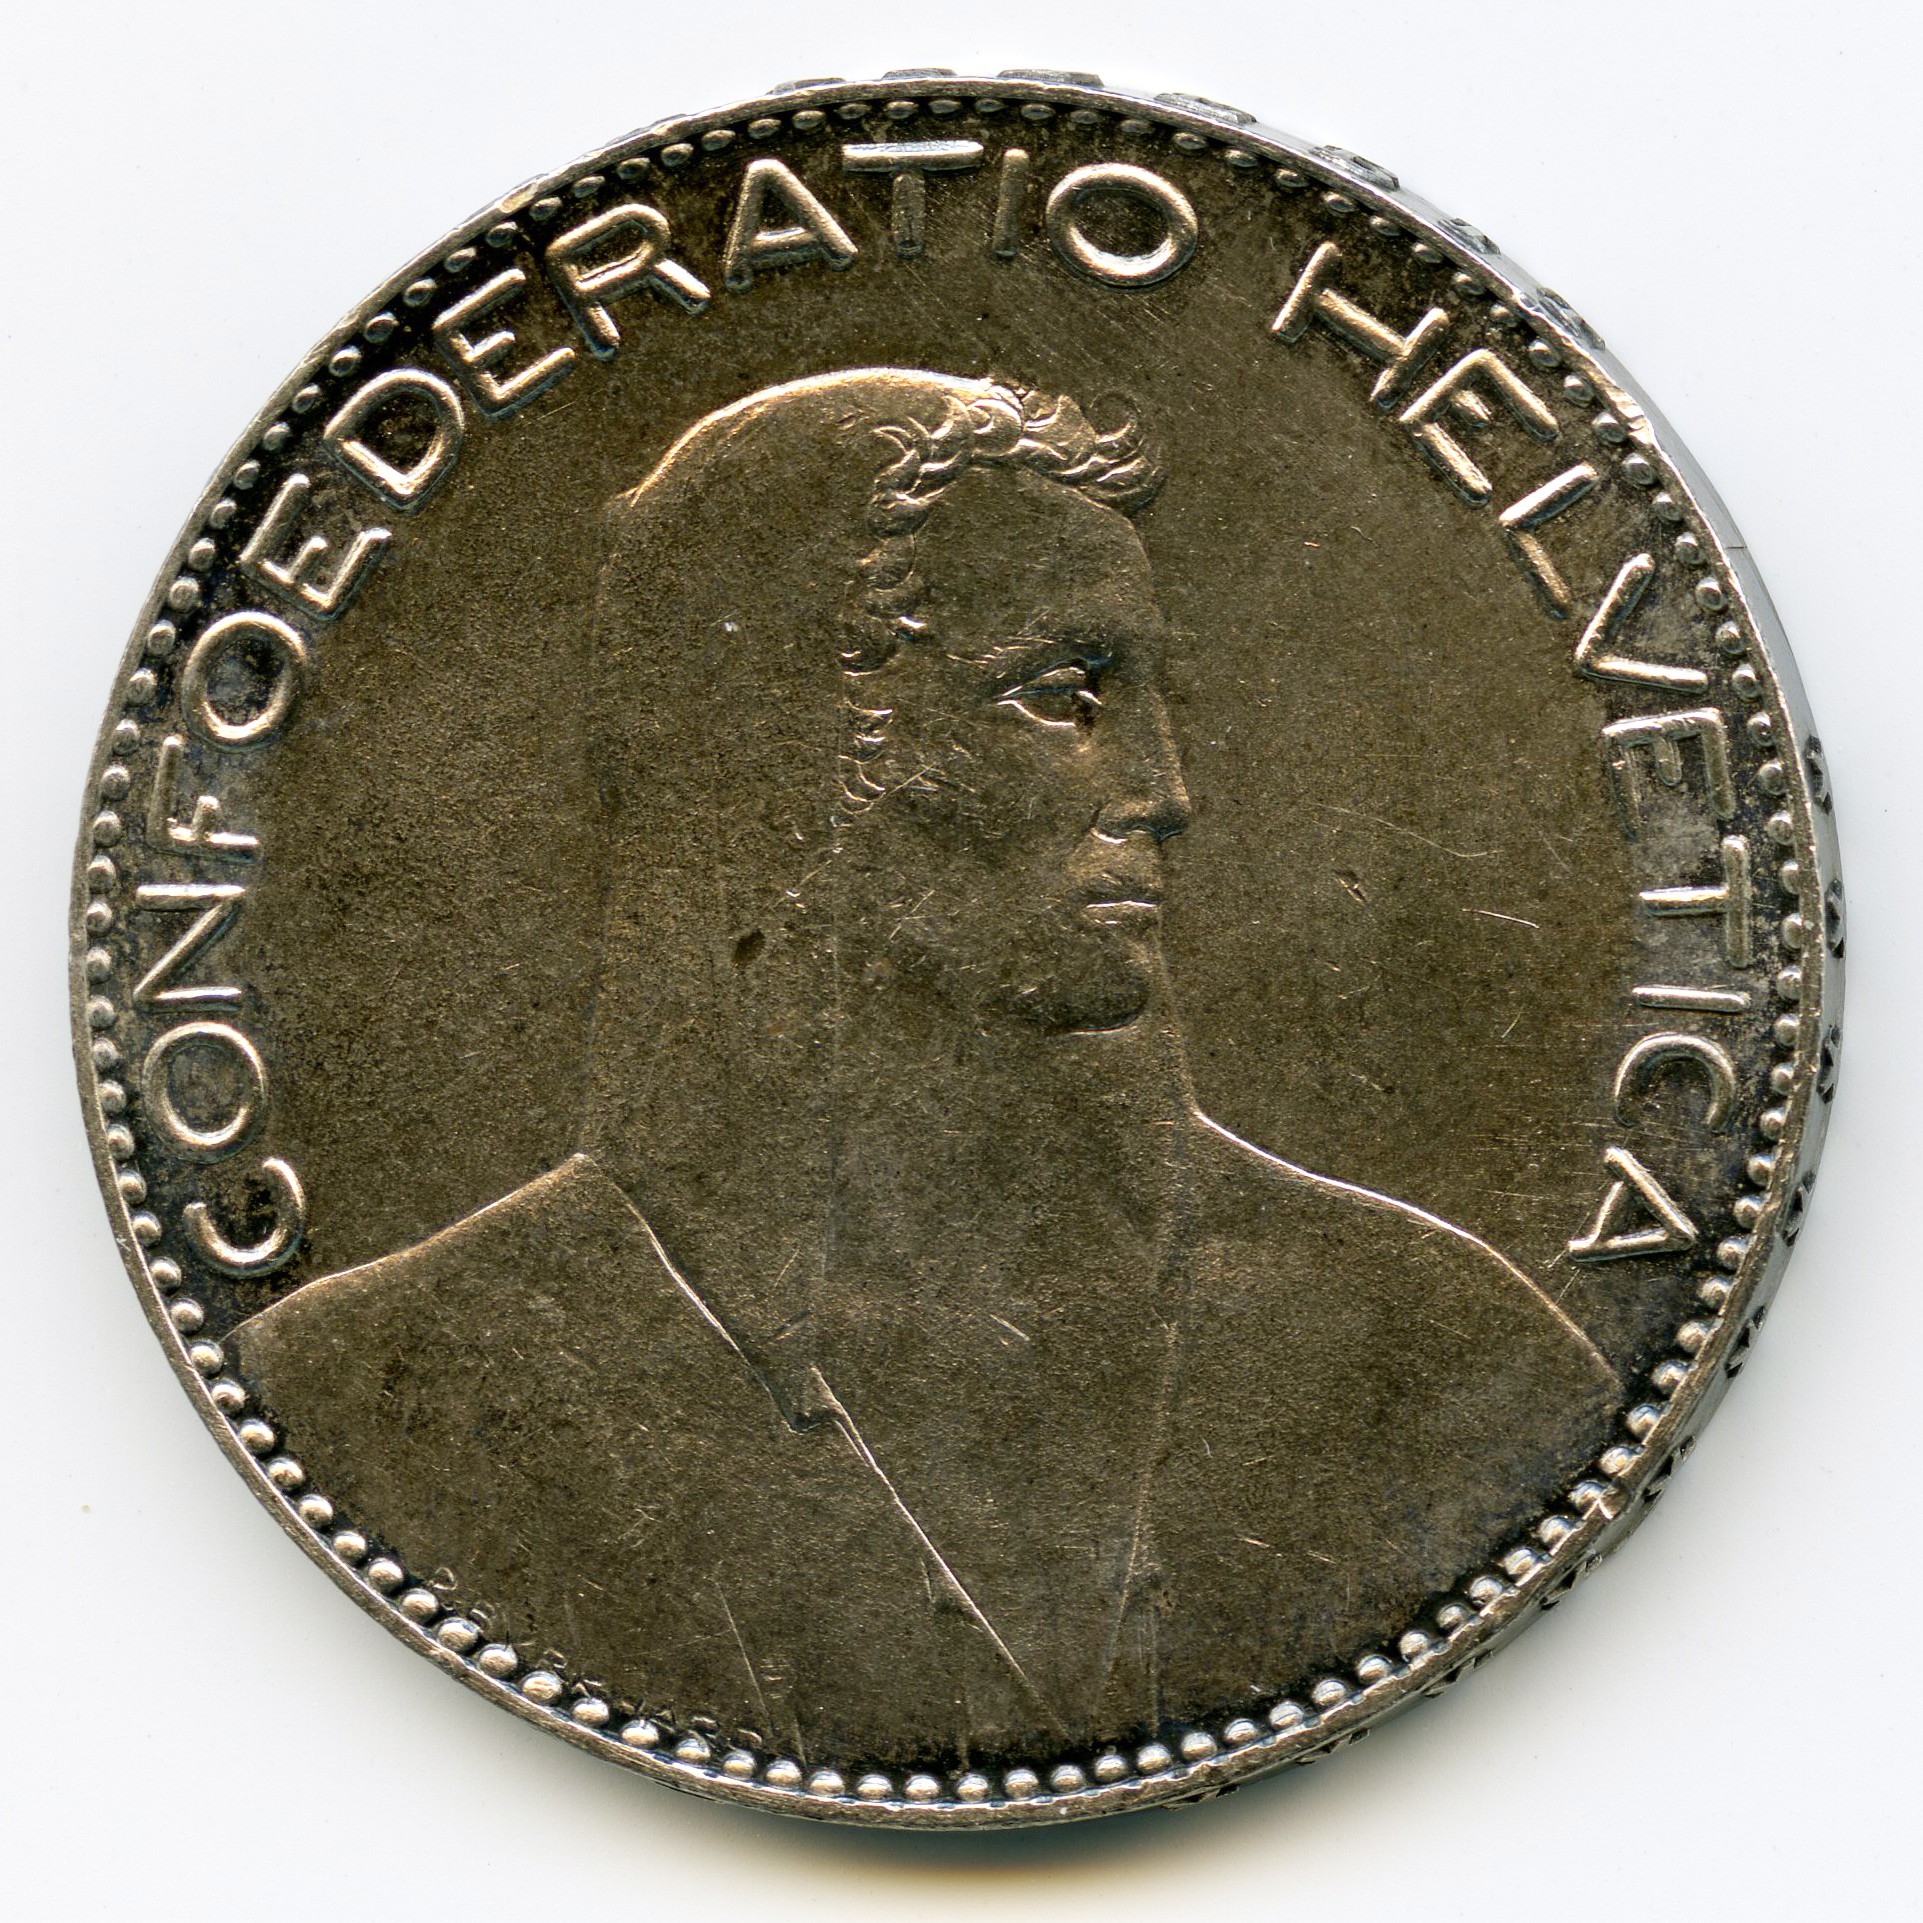 Suisse - 5 Francs - 1922 B avers